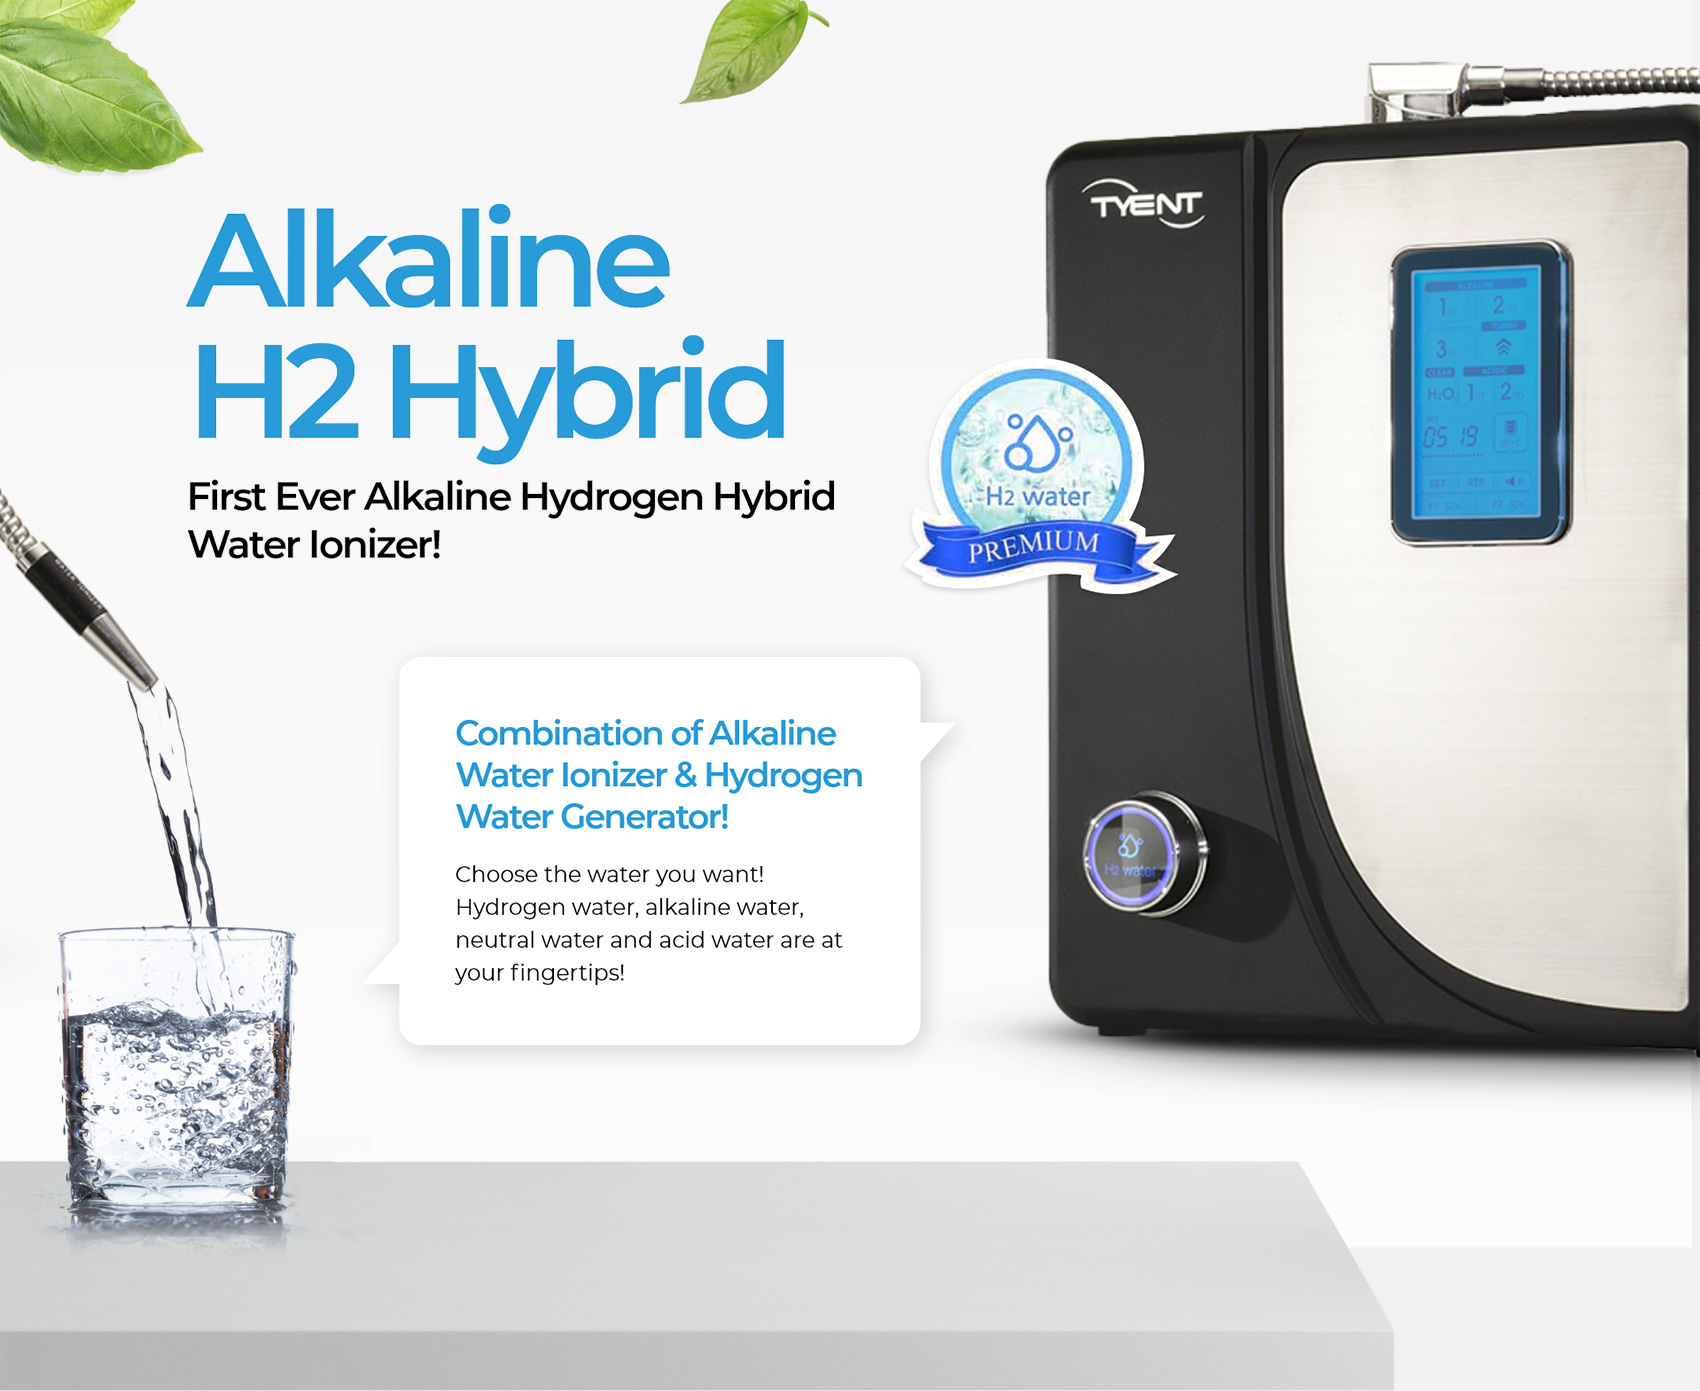 First Ever Alkaline Hydrogen Hybrid Water Ionizer!